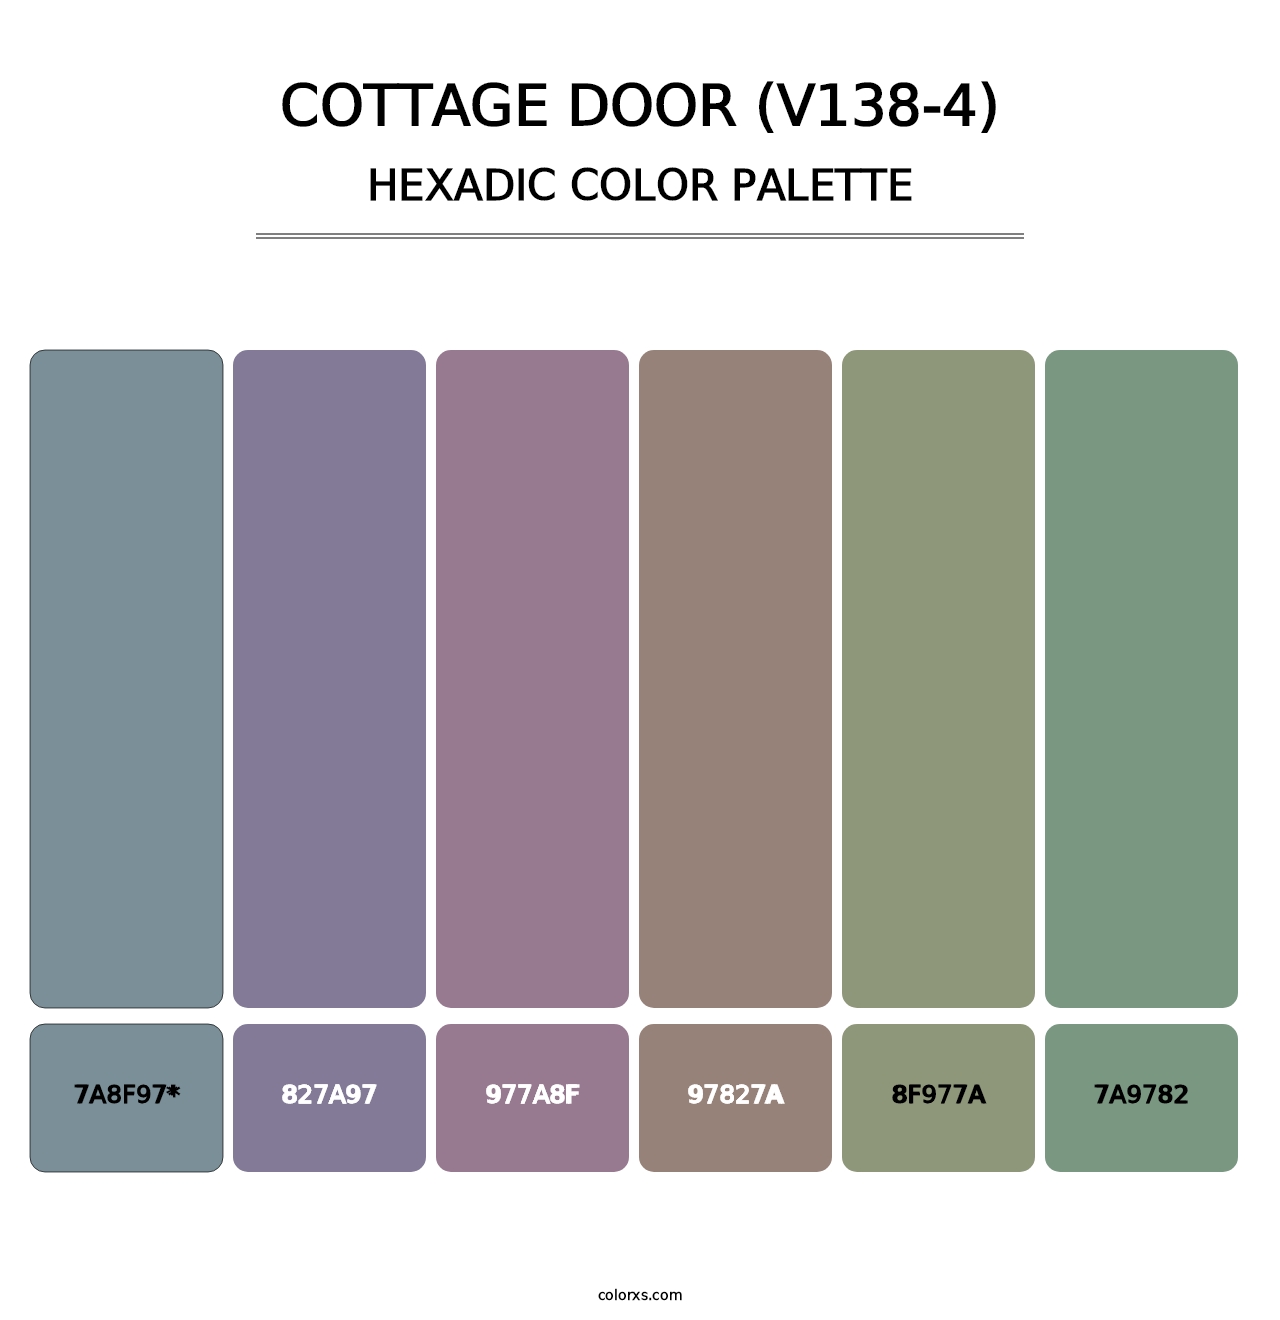 Cottage Door (V138-4) - Hexadic Color Palette